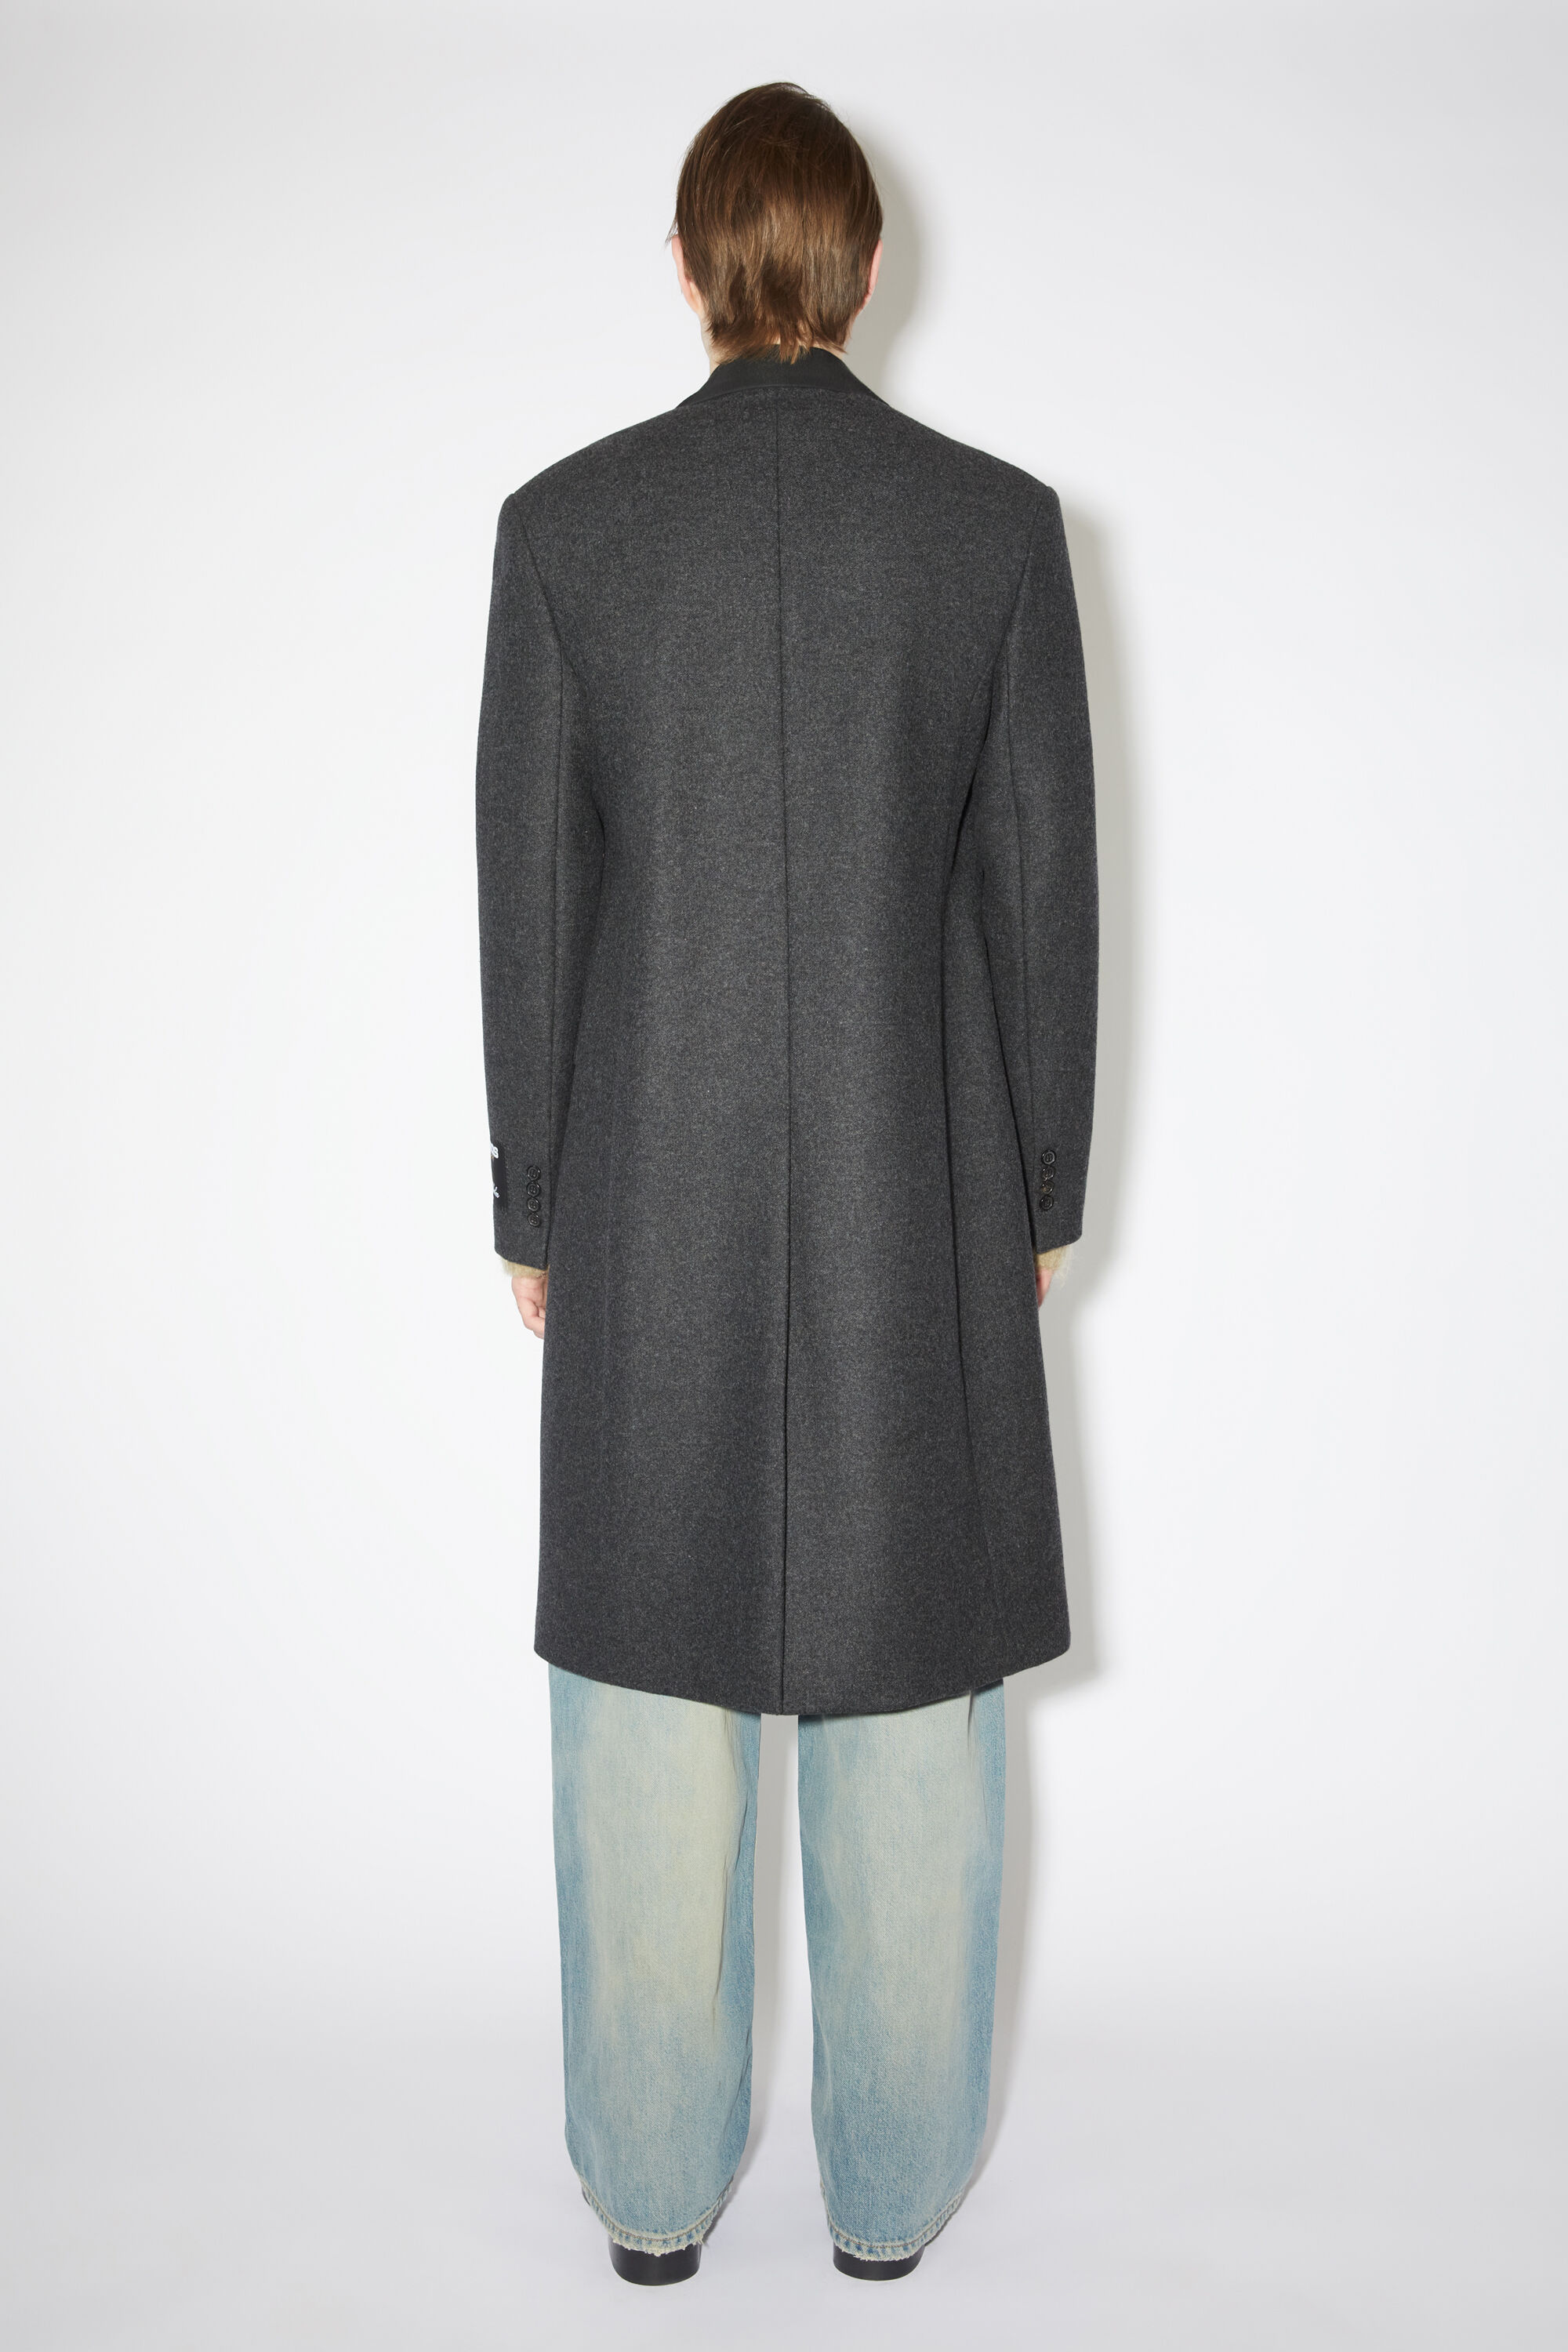 아크네 스튜디오 Acne Studios Single-breasted wool blend coat - Dark Grey Melange,Dark Grey melange